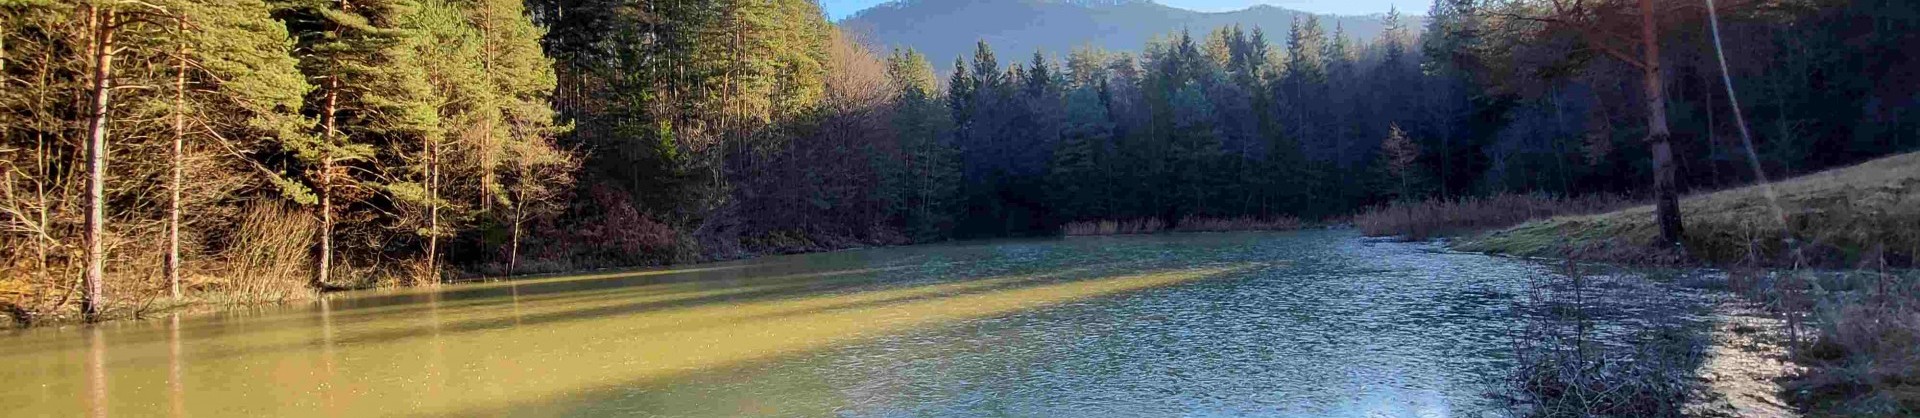 Ribnik liboje jezera slovenije slovenska jezera moja jezera manca korelc 1 sl